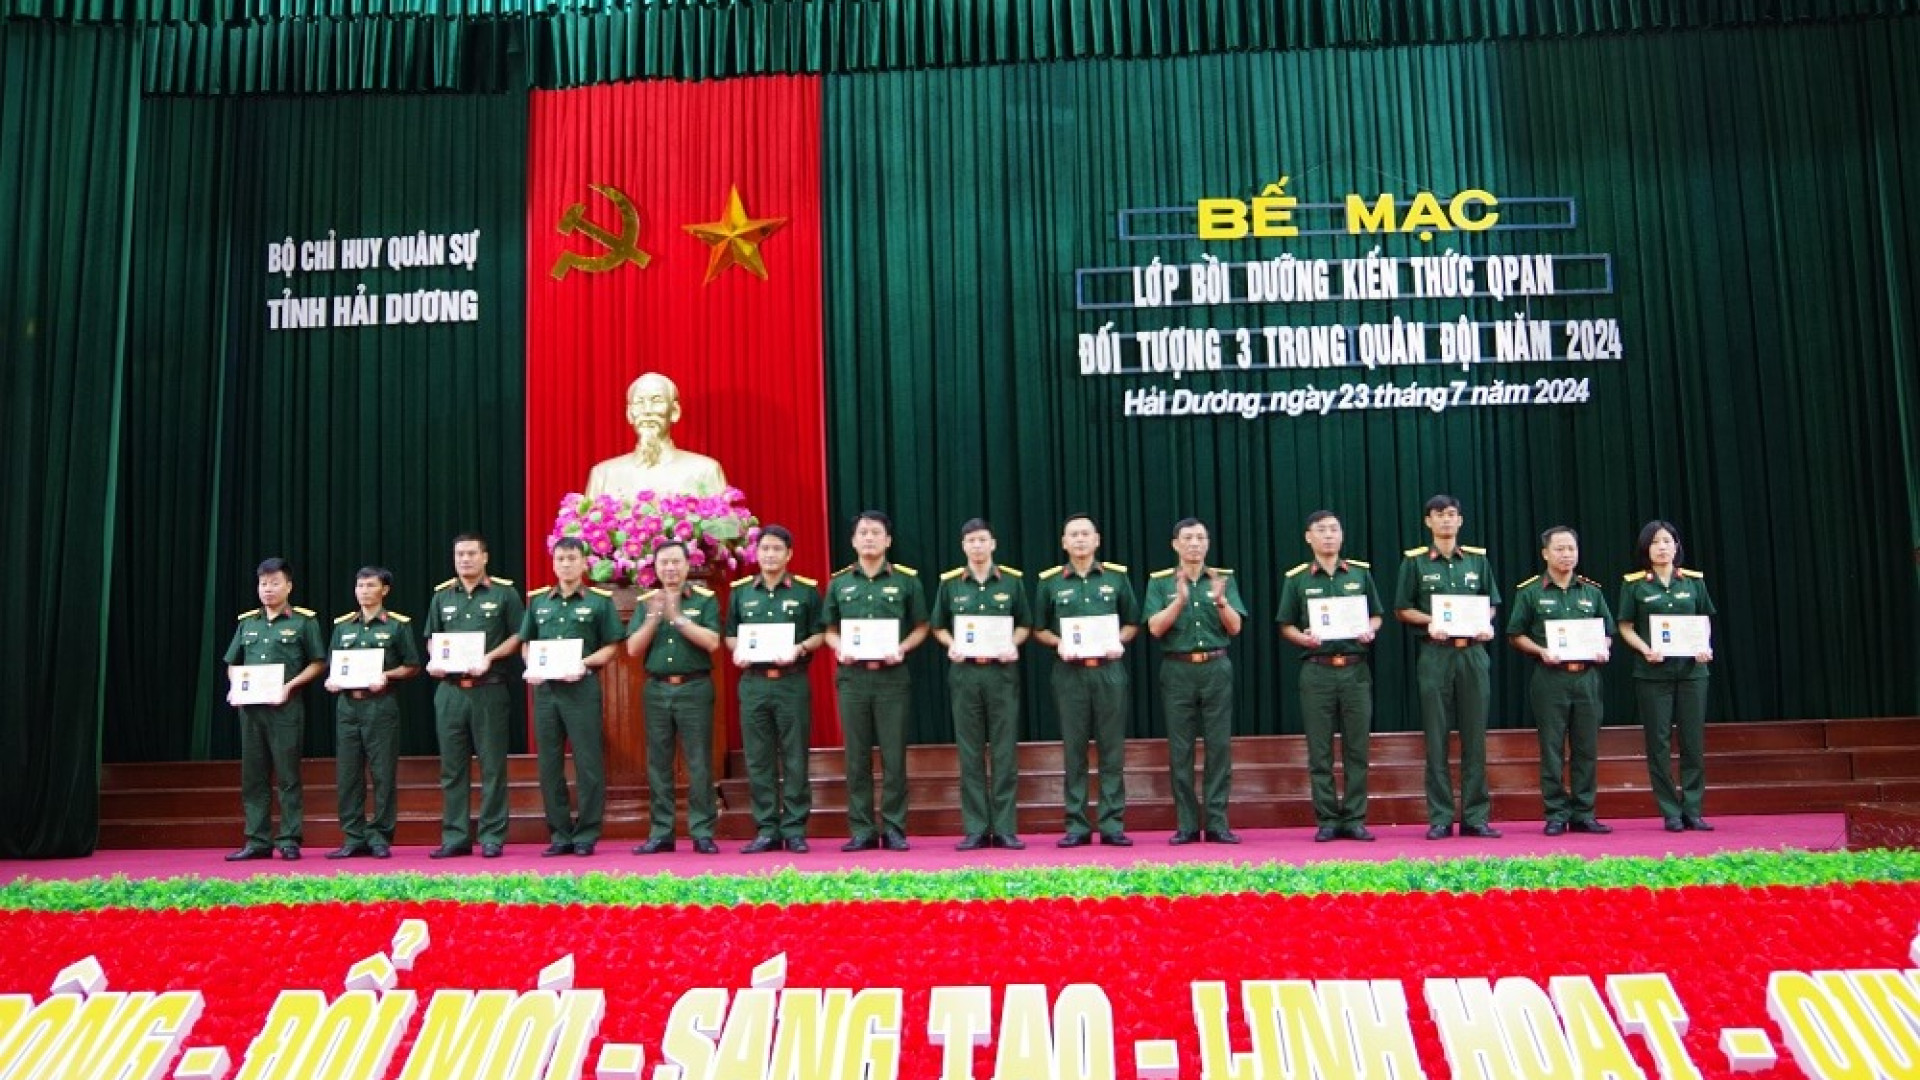 Bộ CHQS tỉnh Hải Dương hoàn thành bồi dưỡng kiến thức QP-AN đối tượng 3 trong Quân đội năm 2024